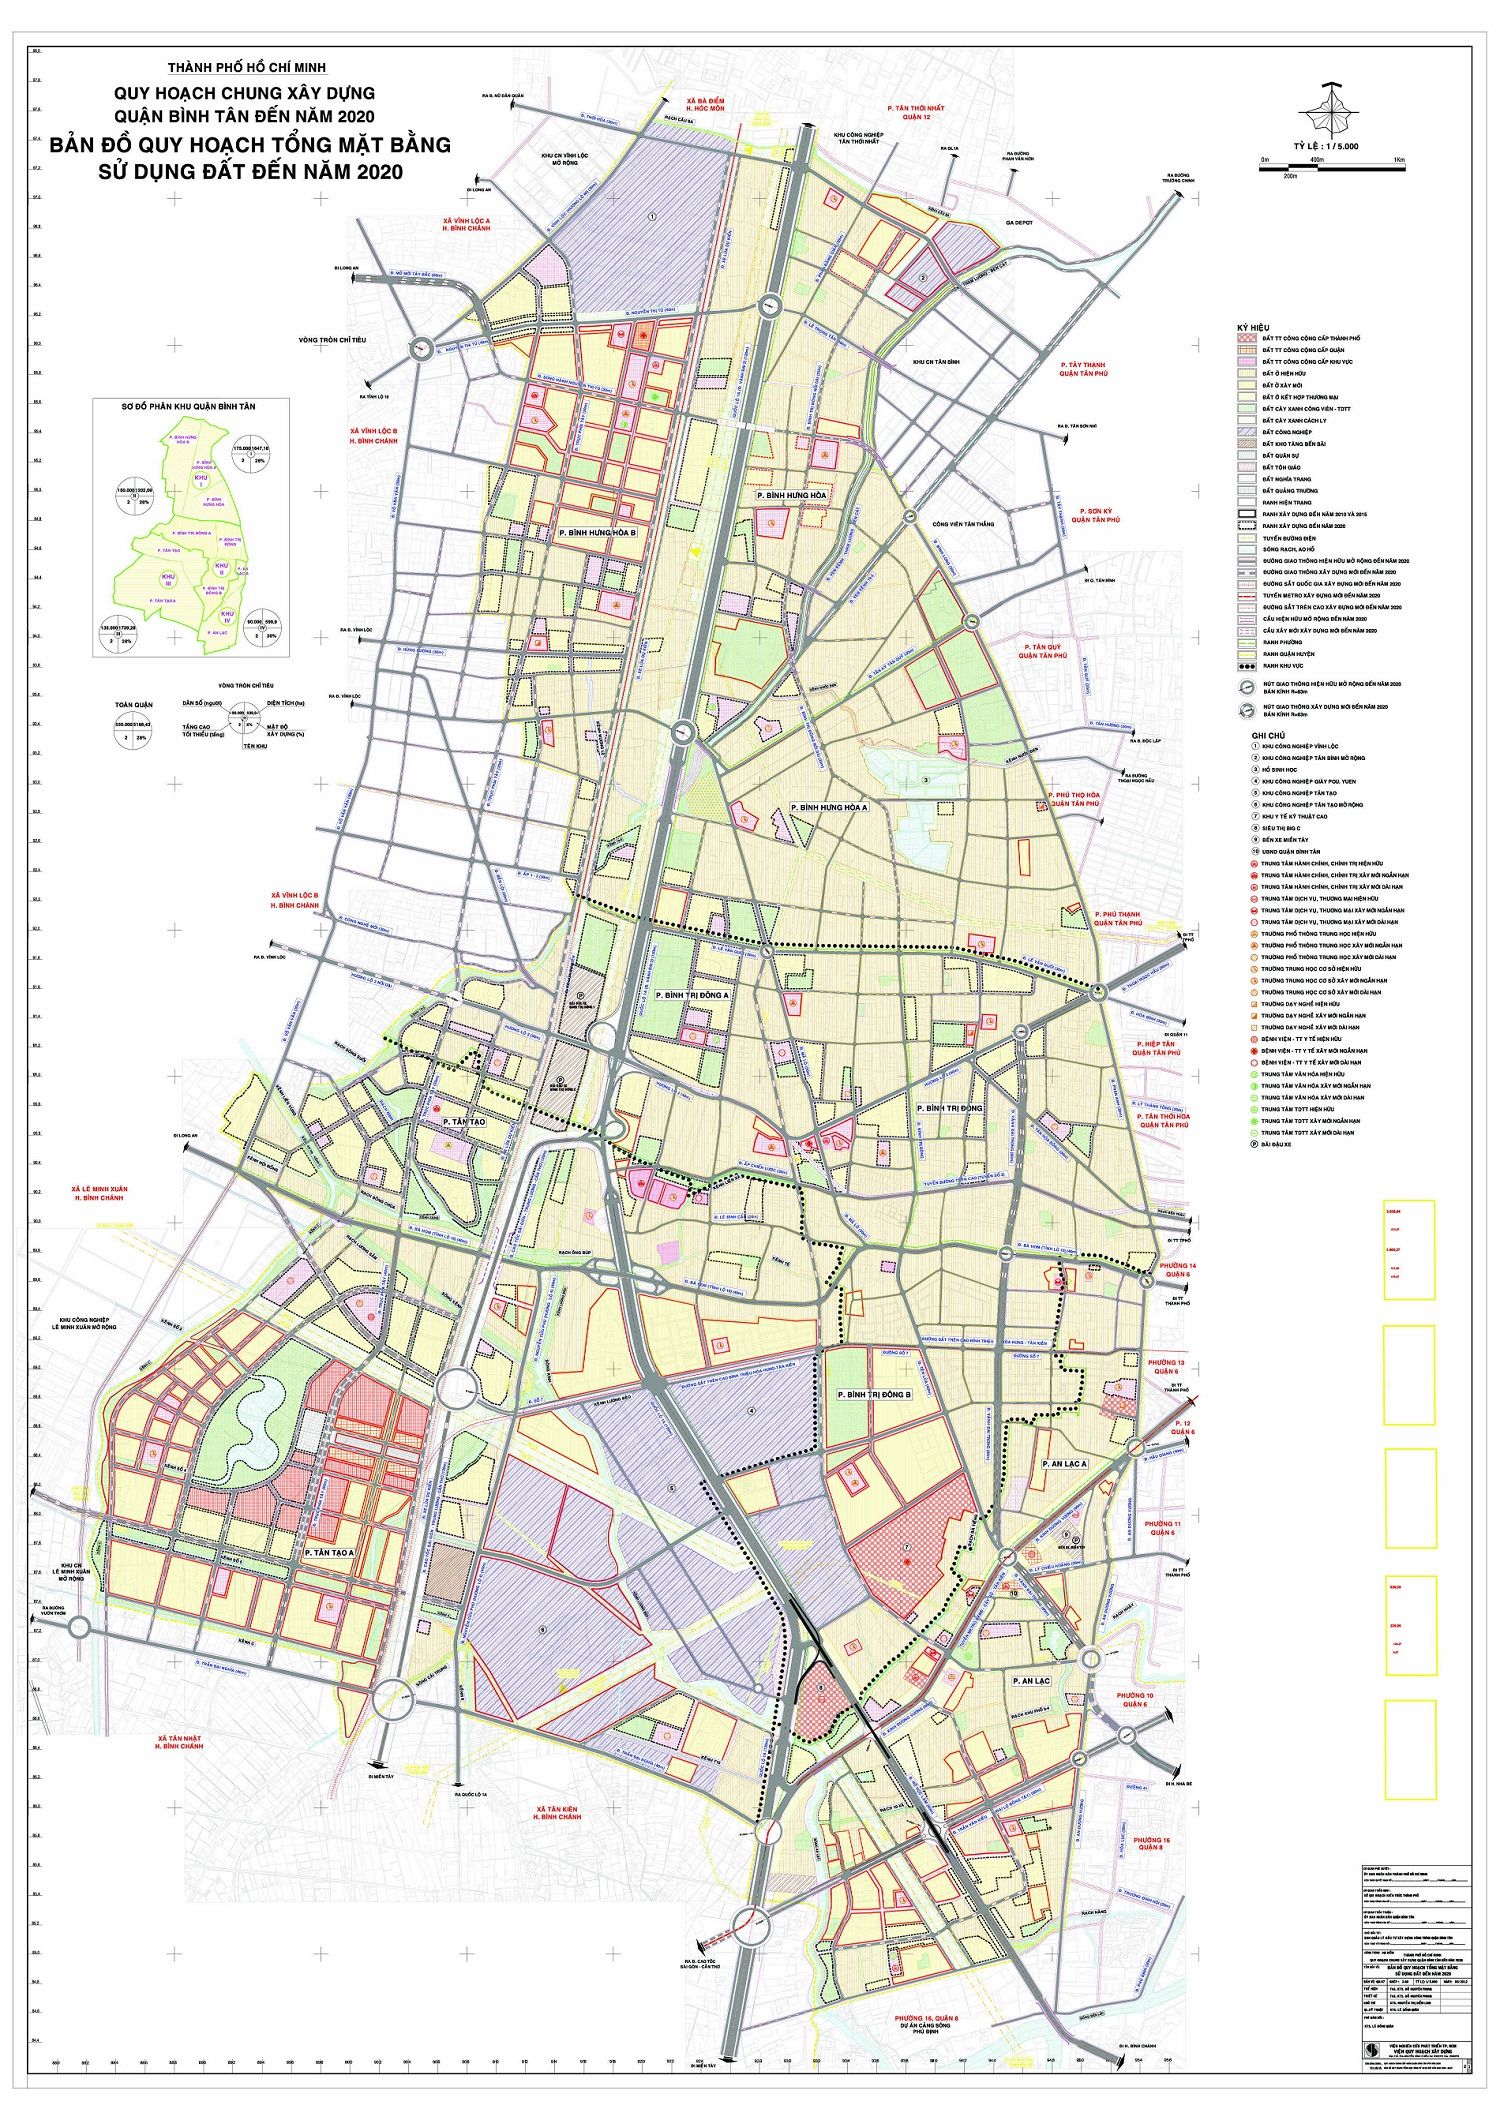 Cập nhật bản đồ quy hoạch quận Bình Tân TPHCM đến năm 2020 chi tiết